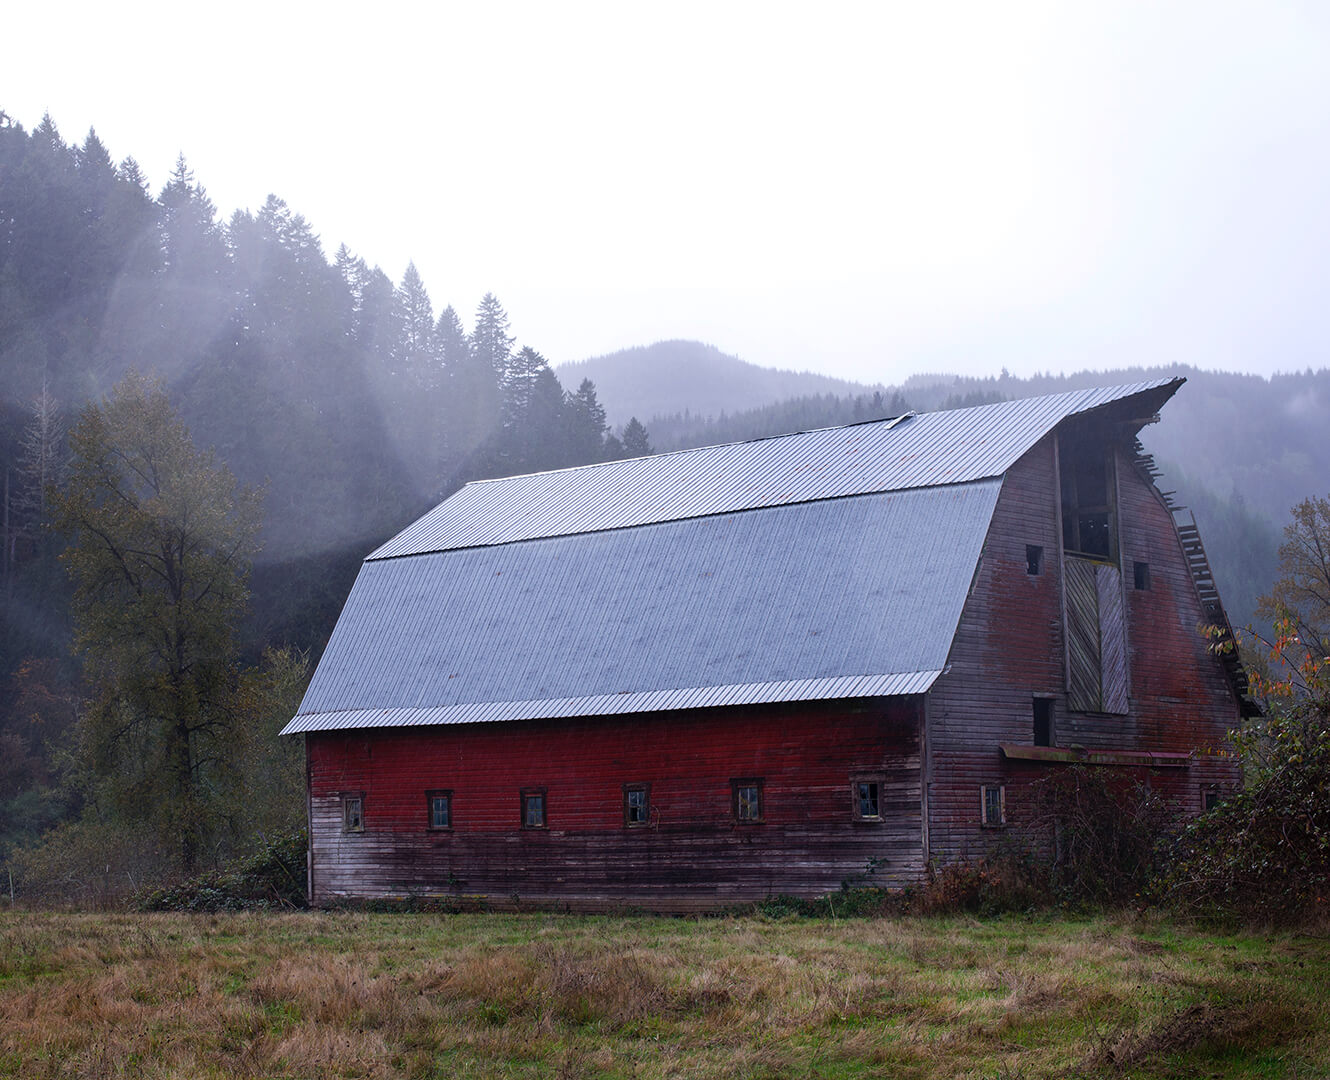 Red barn shown in a misty field